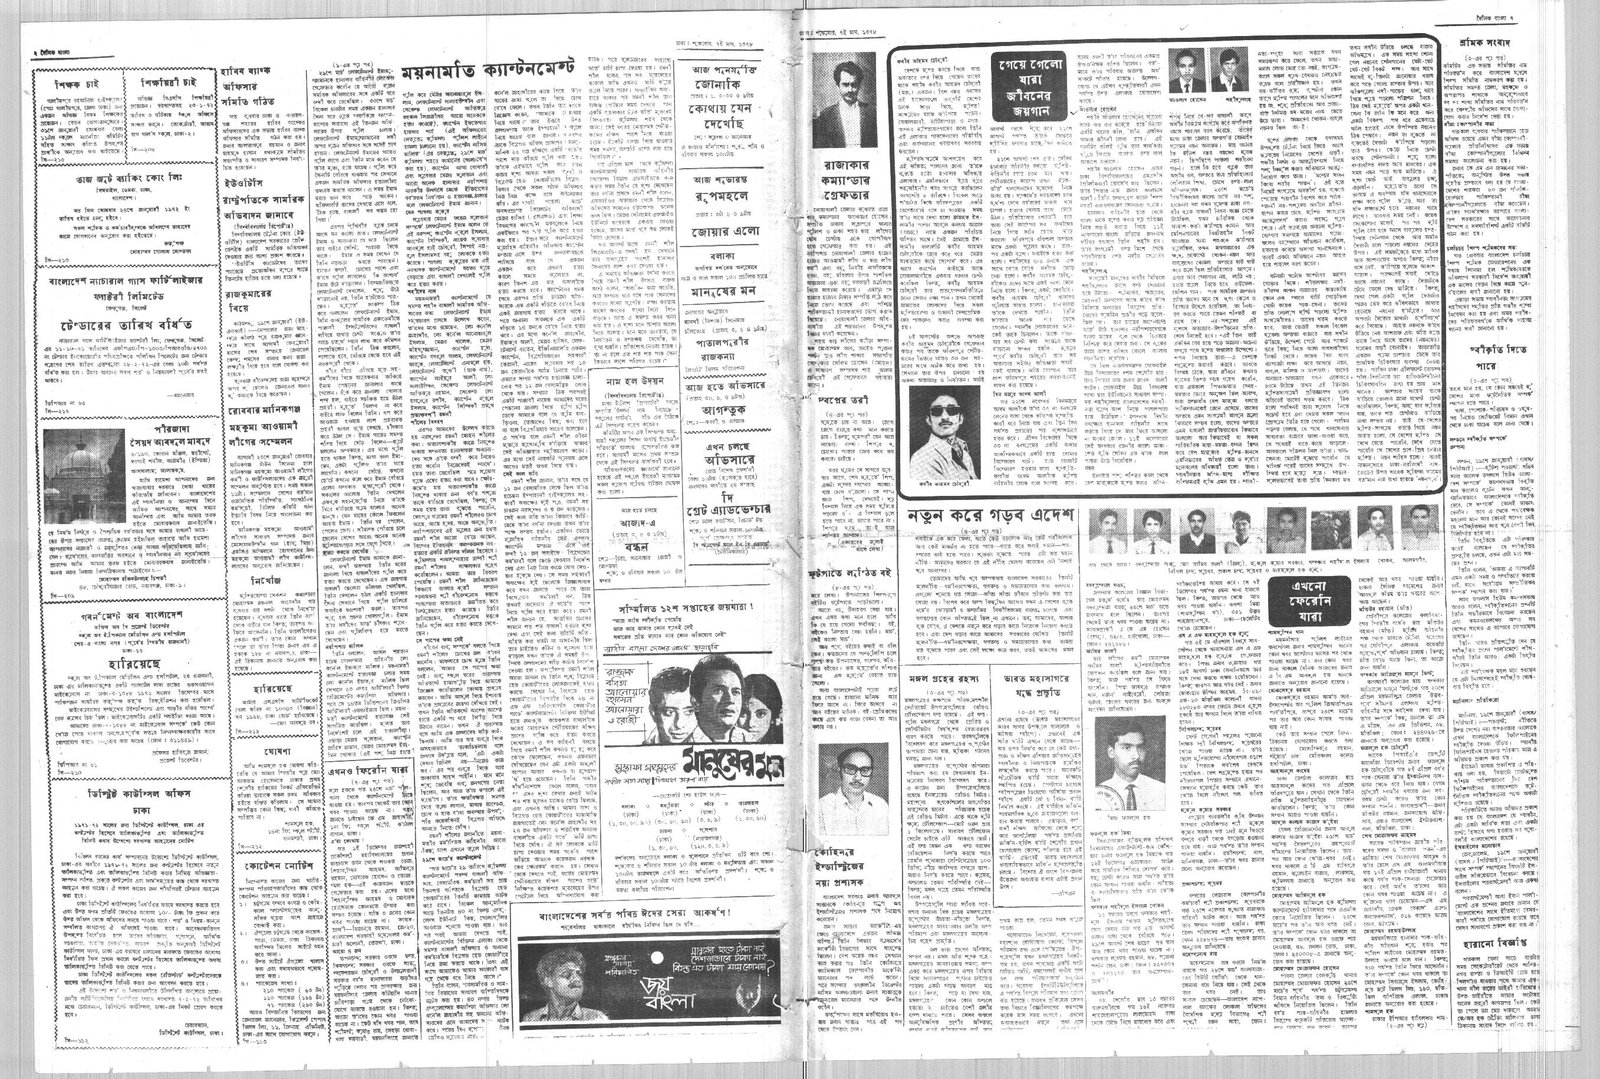 21JAN1972-DAINIK BANGLA-Regular-Page 2 and 7